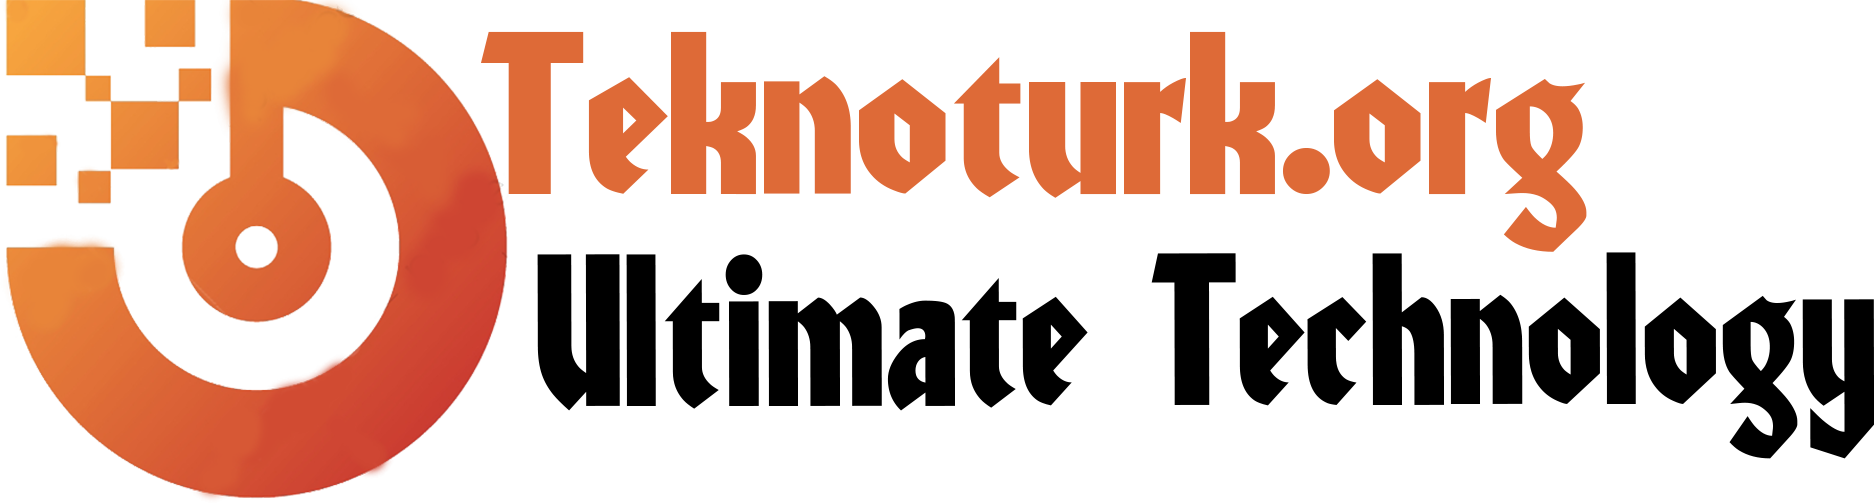 teknoturk.org